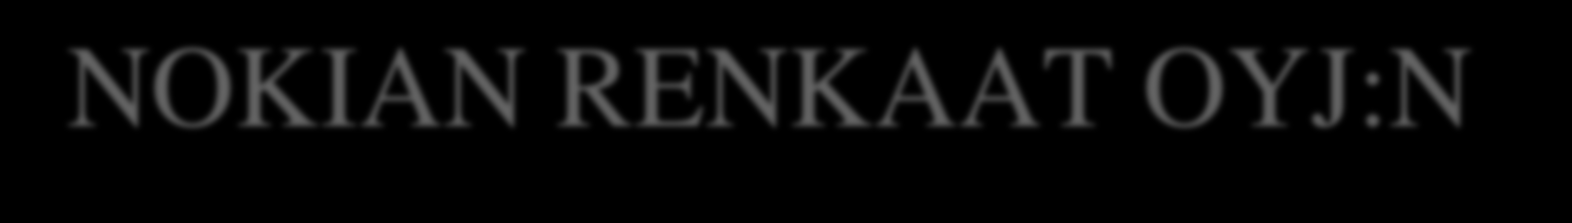 27. huhtikuu 2000 00:00 kategoriassa Pörssitiedotteet Nokian Renkaat Oyj Pörssitiedote 27.4.2000 klo 8.